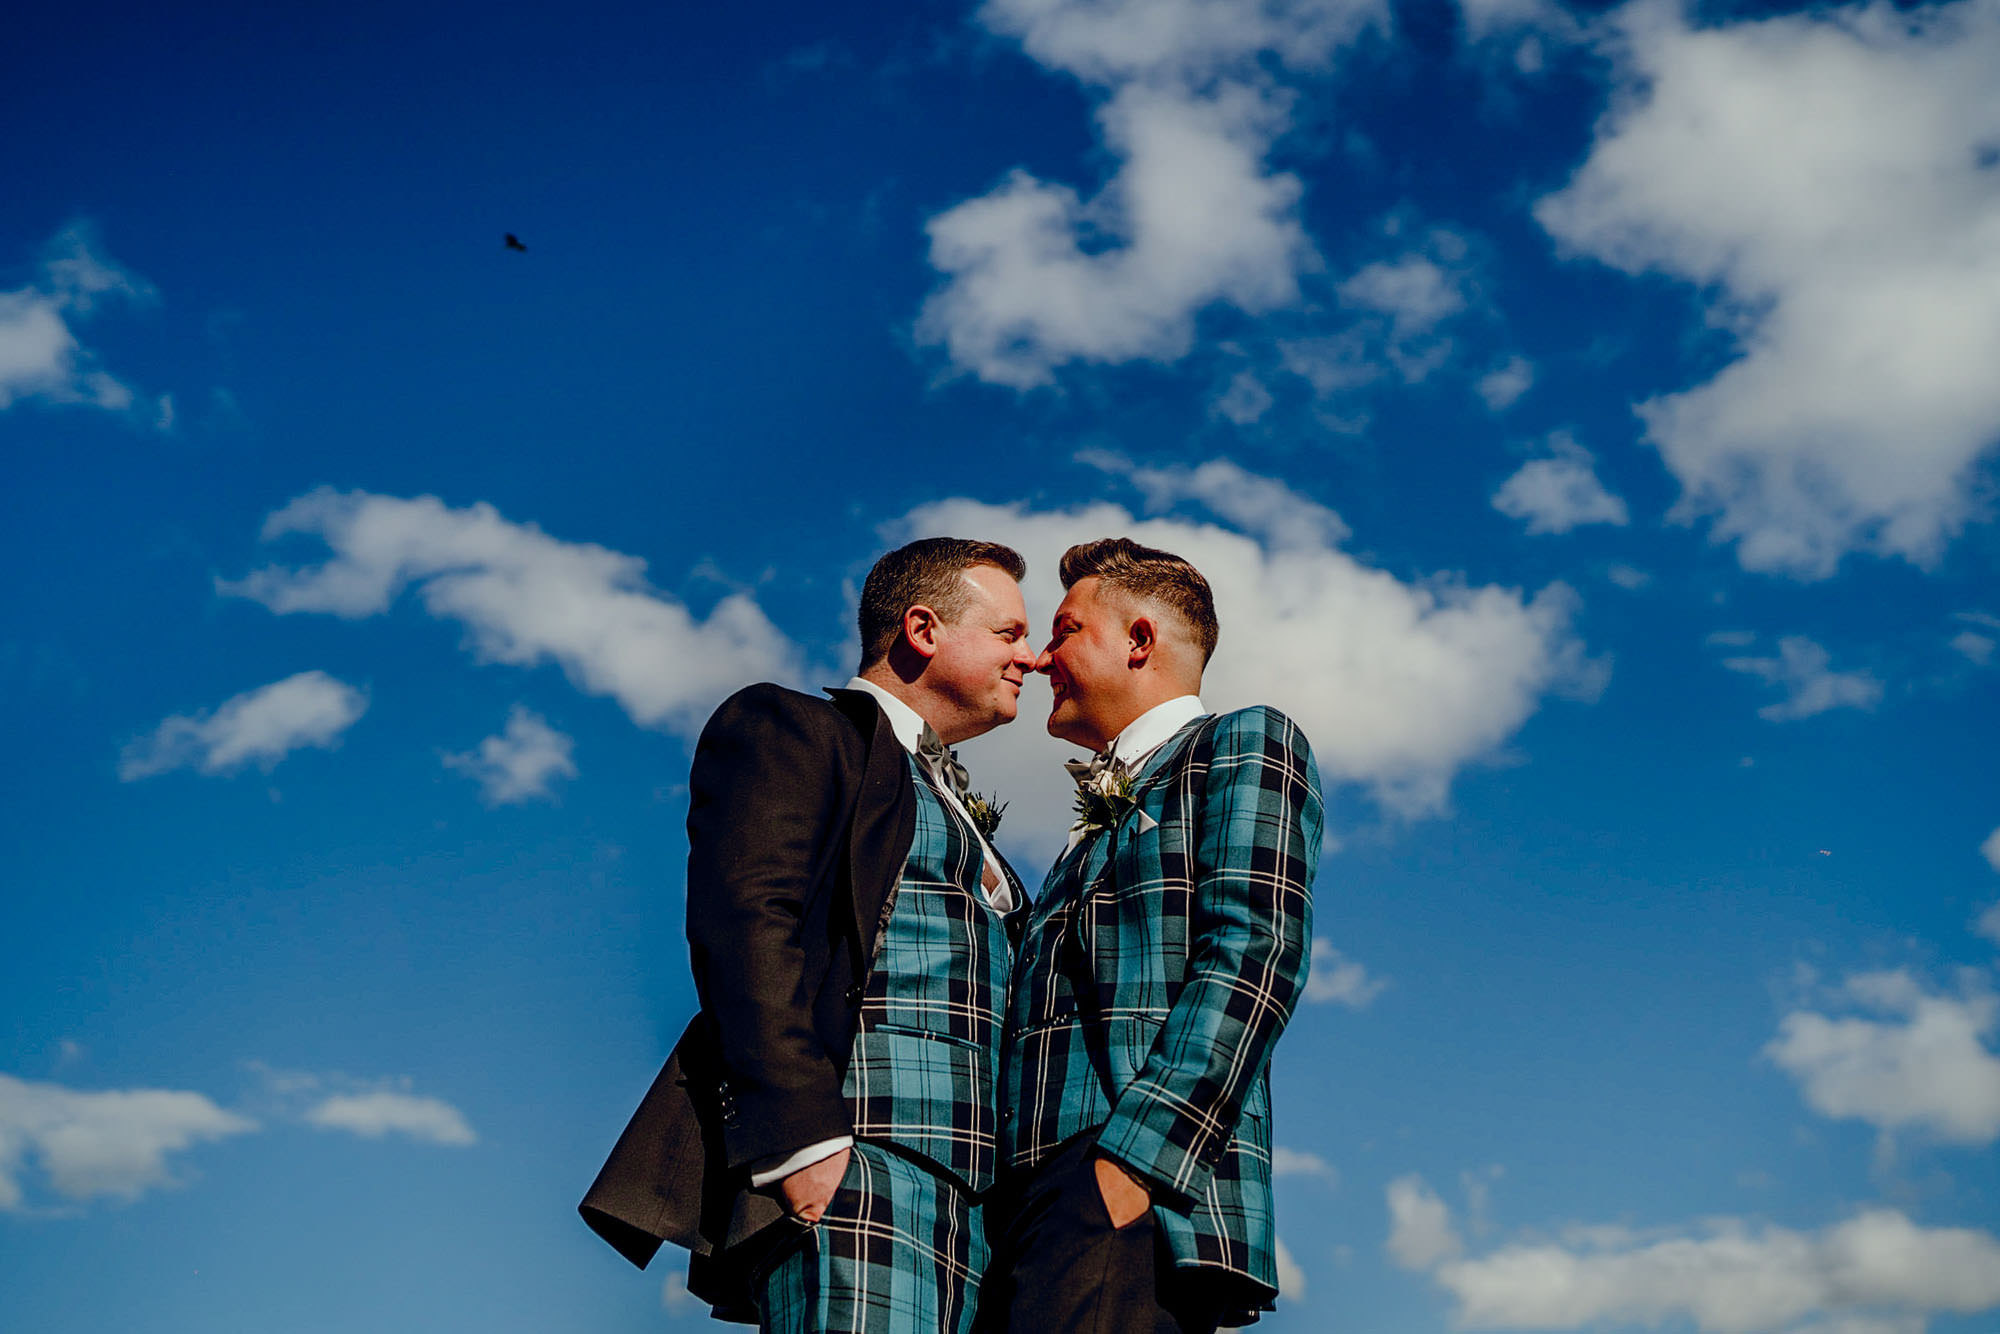 Rudding park gay wedding photos